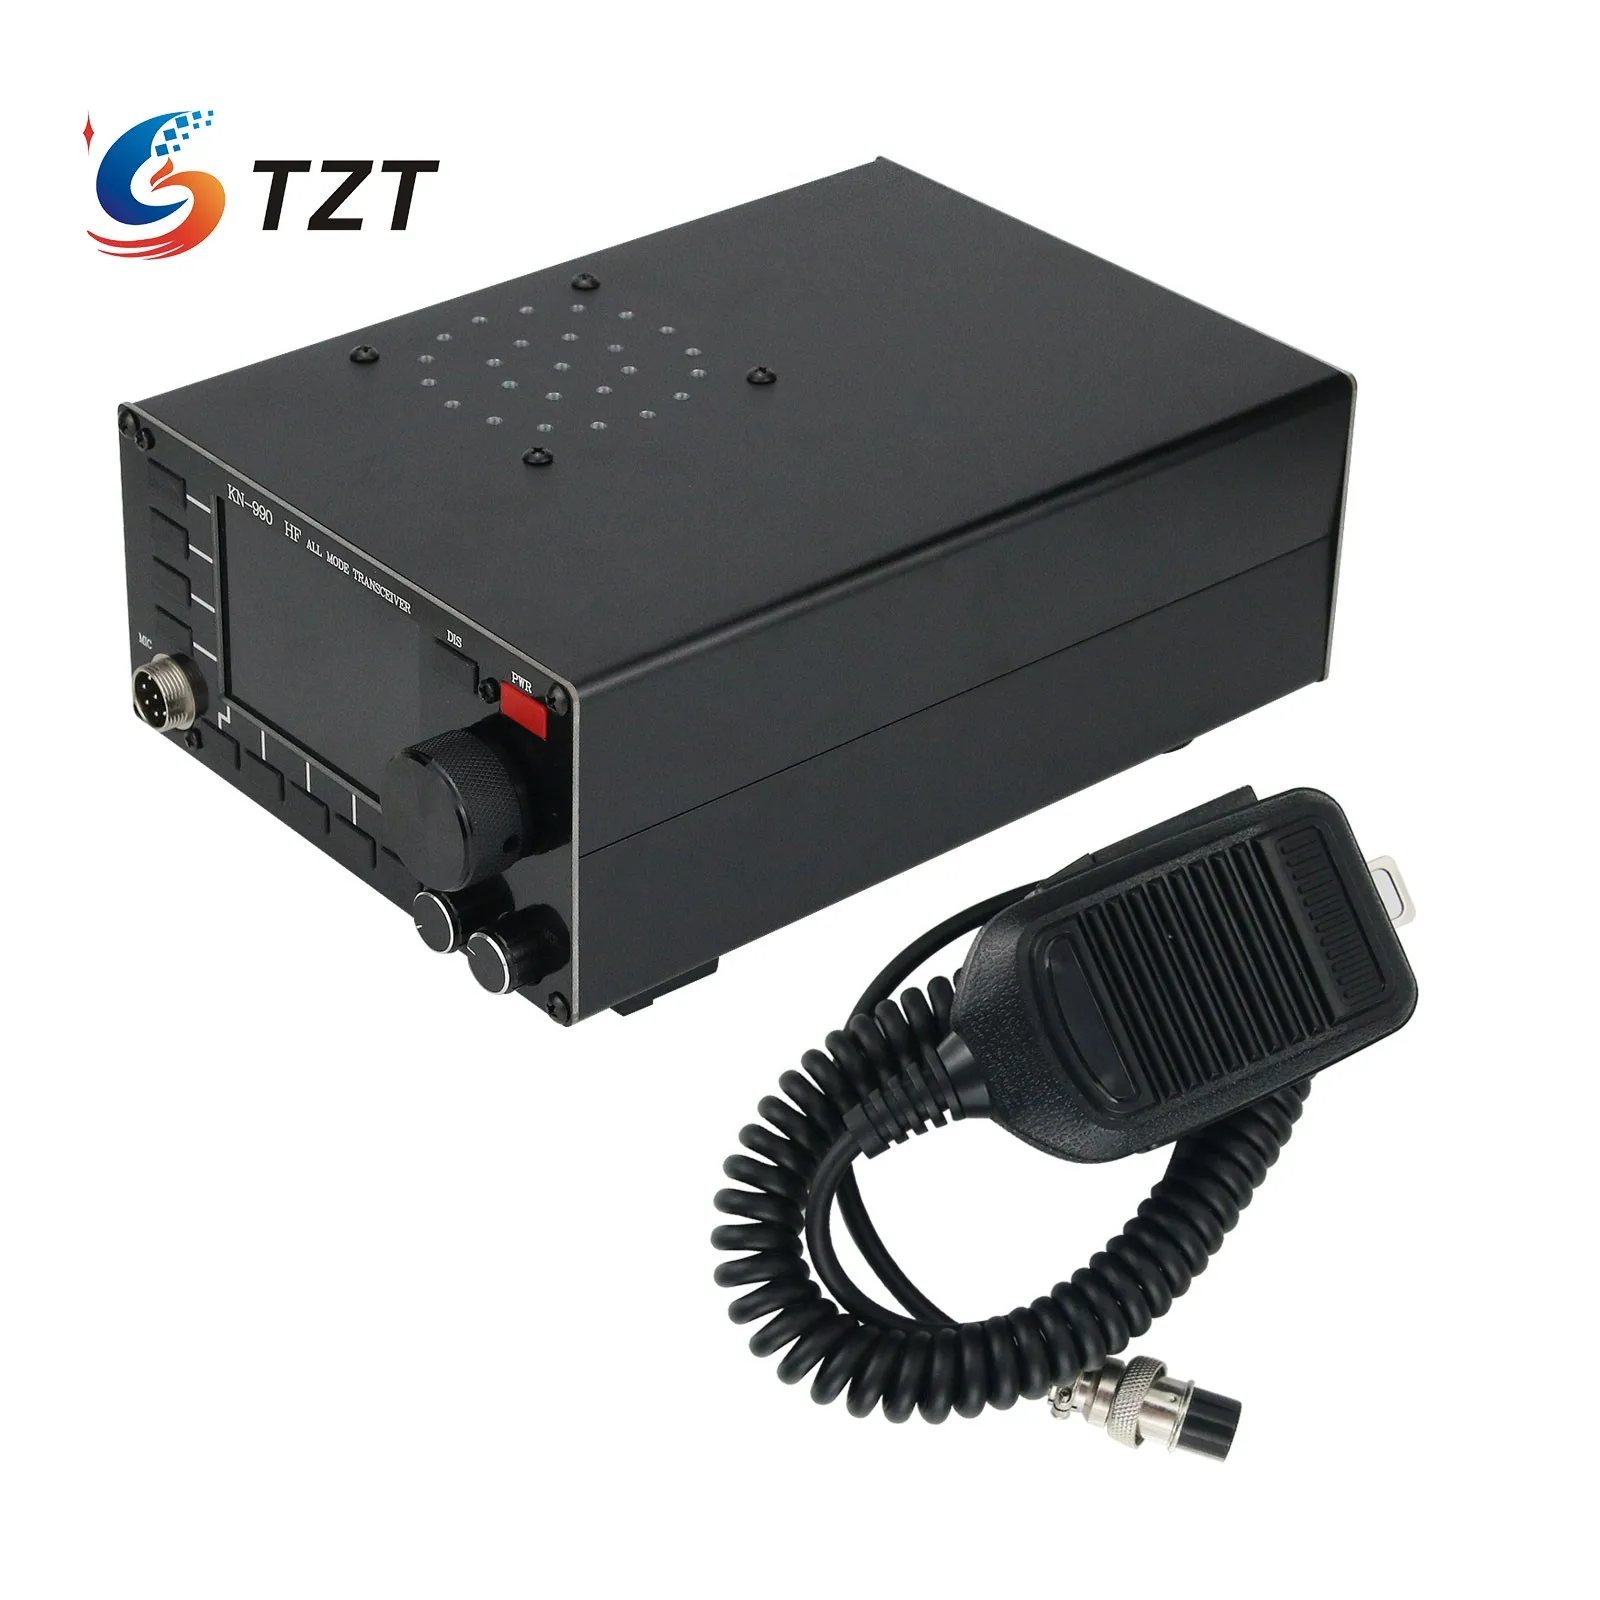 TZT KN990 Shortwave Transceiver HF All Mode Receiver Transmitter SSB/CW/AM/FM/DIGITAL Working Modes